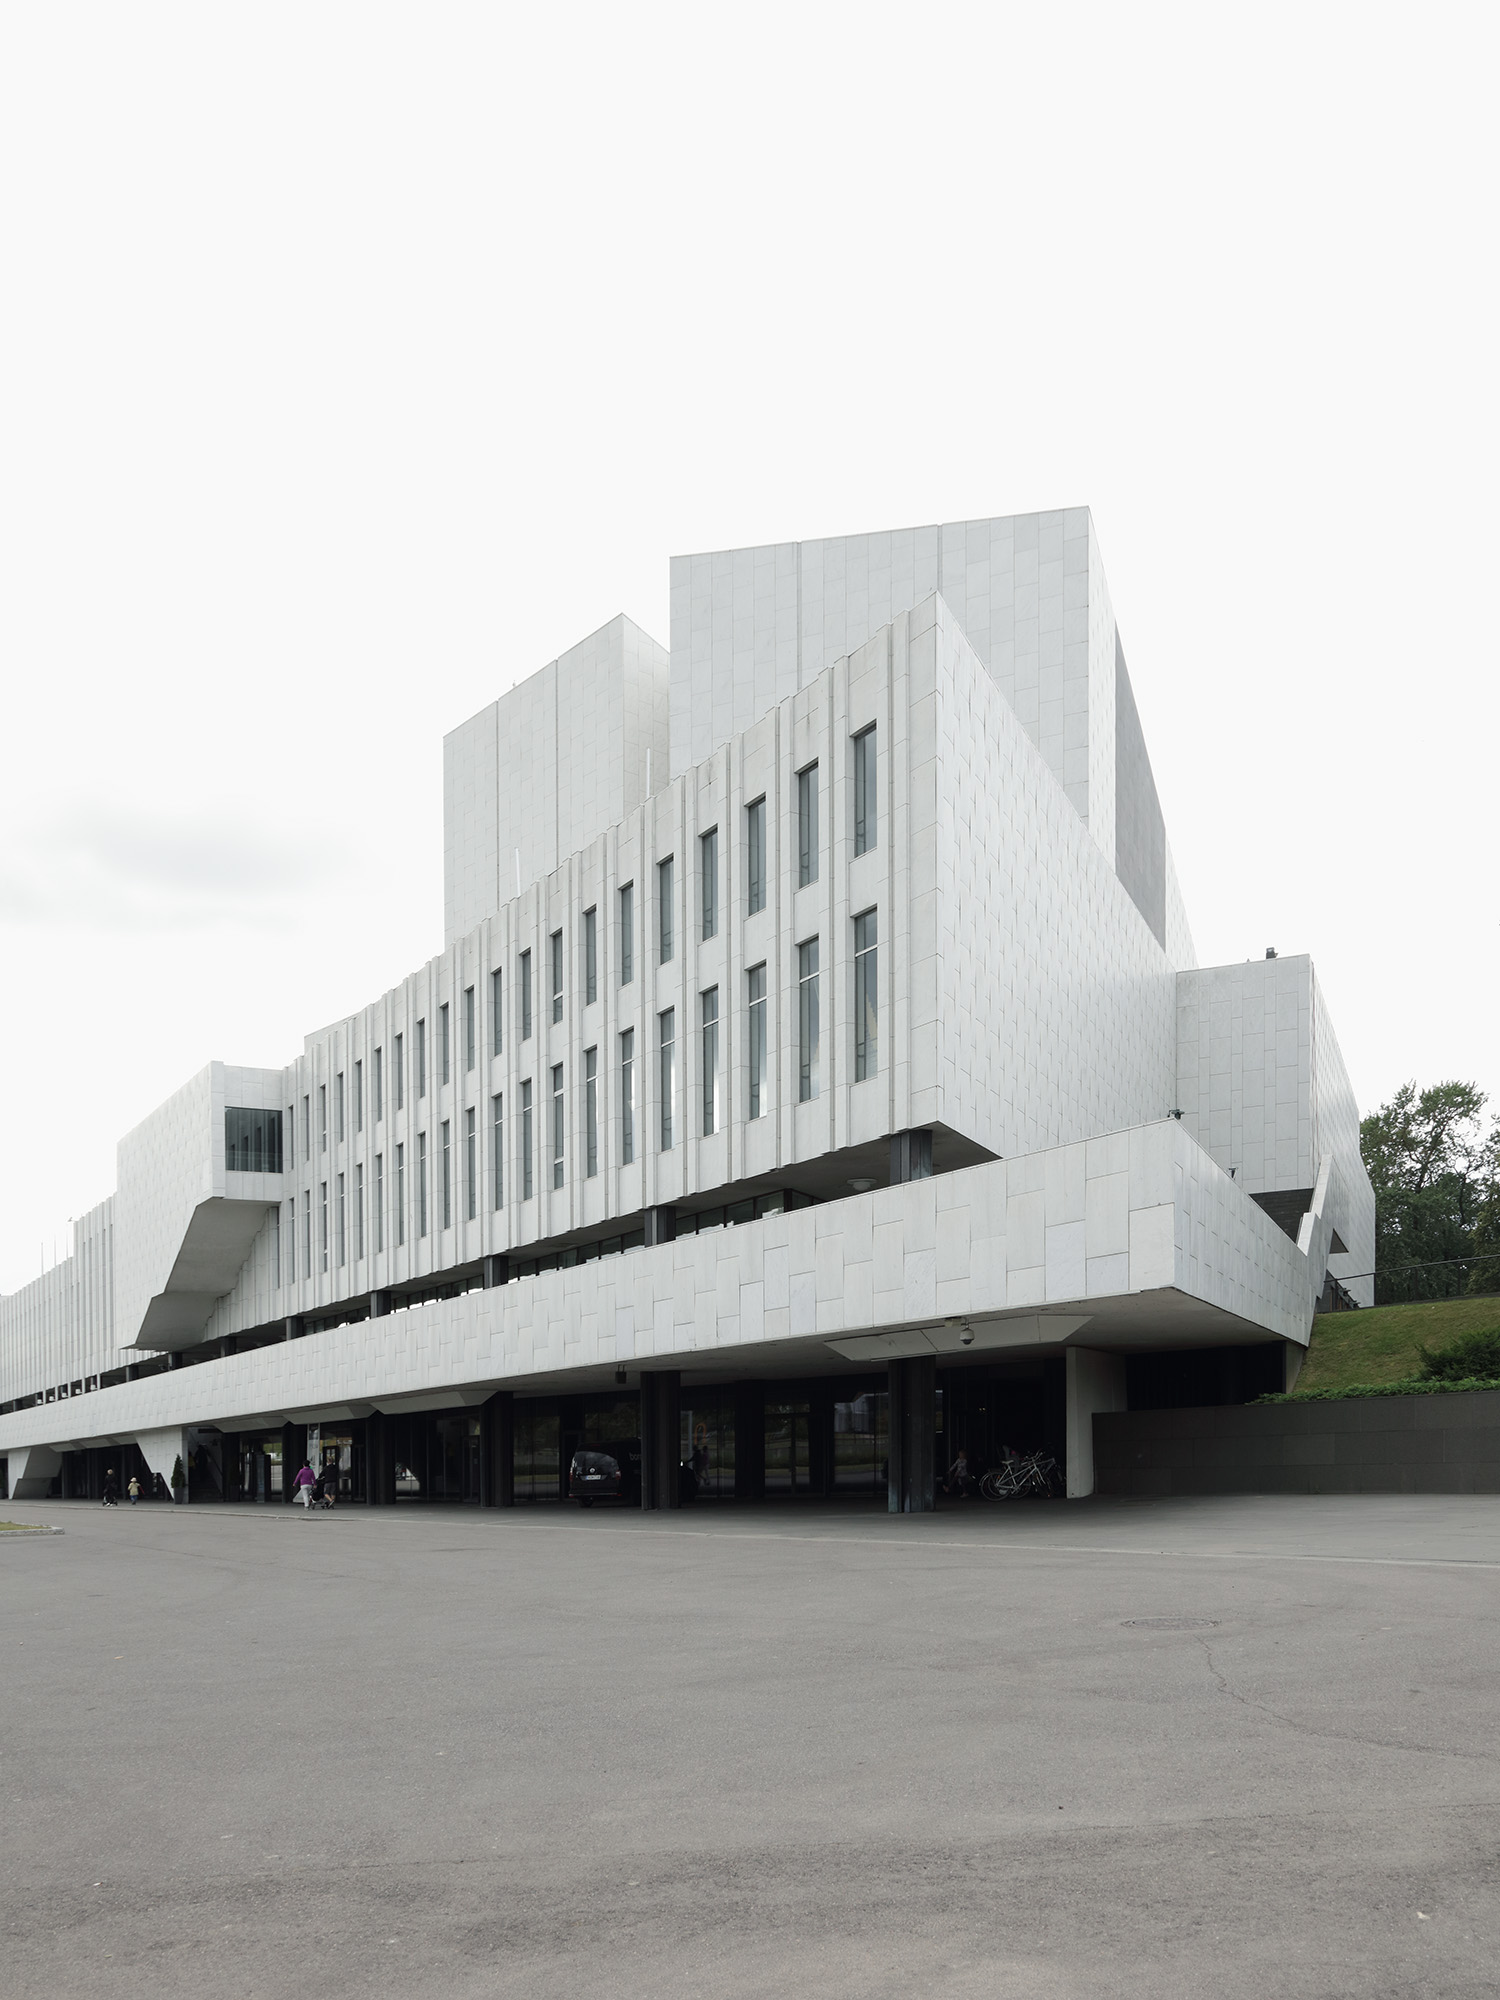 Finlandia Hall
Alvar Aalto, 1967-71
Helsinki